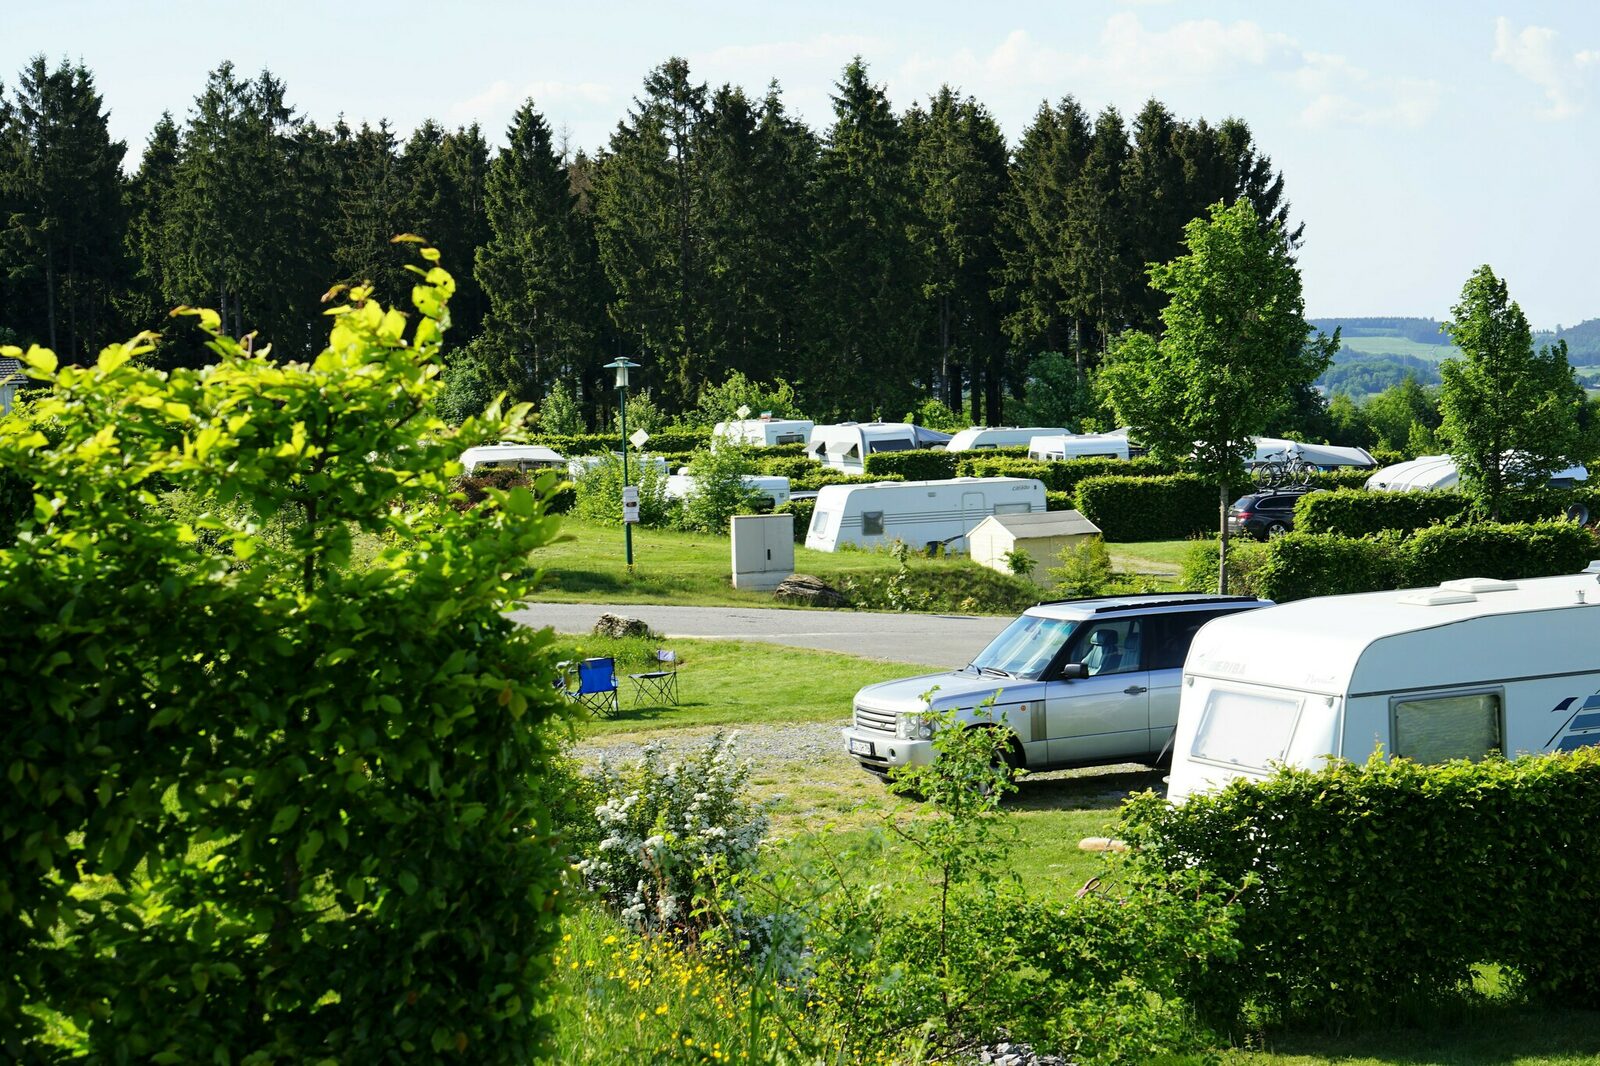 Categorie D - Kampeerplaats voor caravan, camper,tent